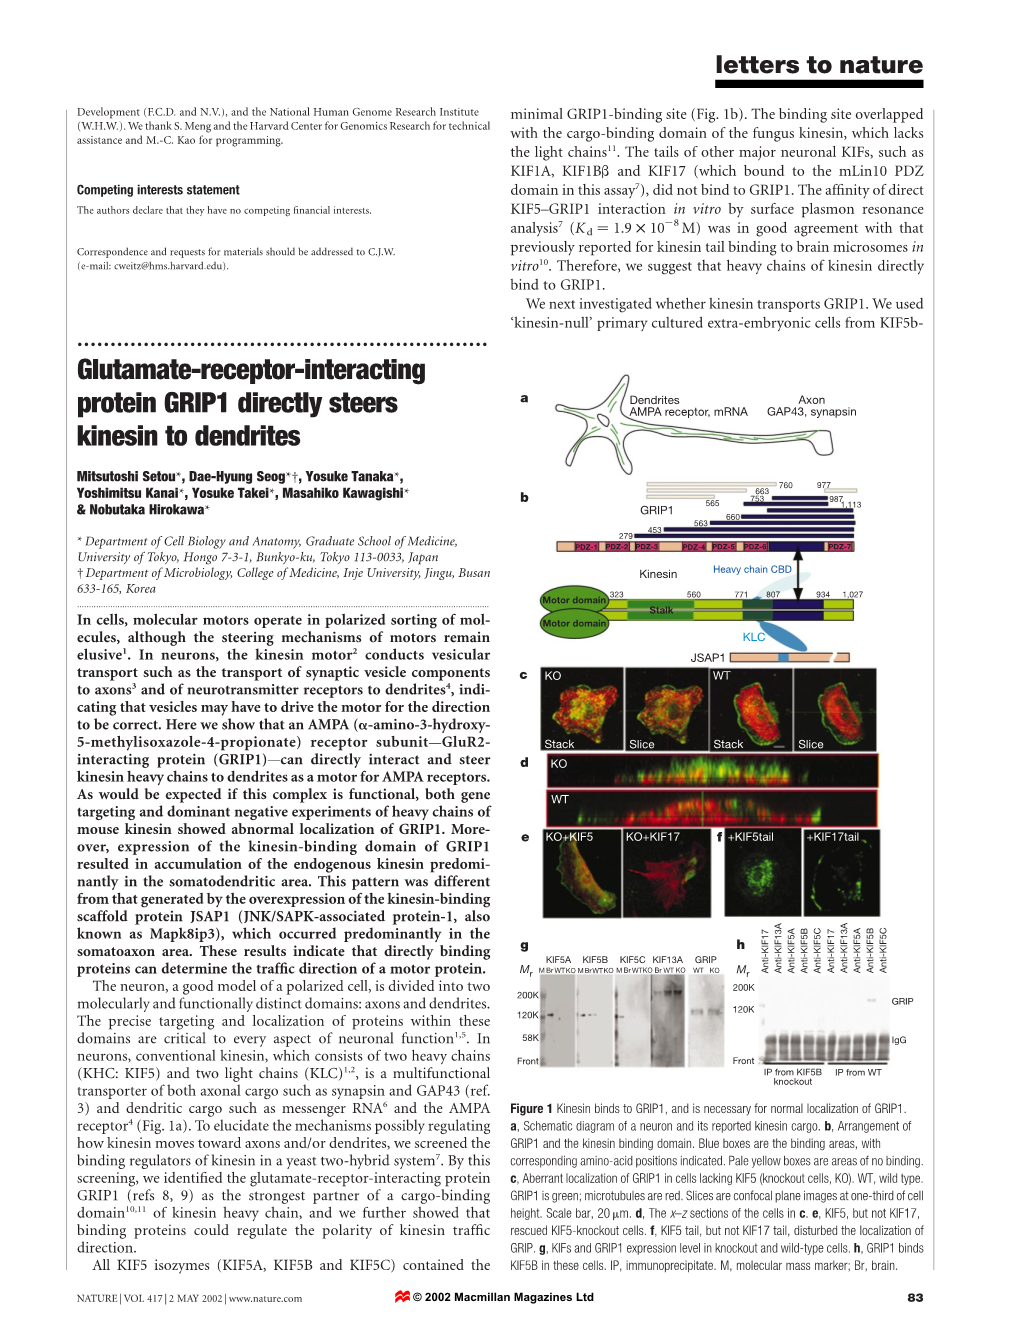 Glutamate-Receptor-Interacting Protein GRIP1 Directly Steers Kinesin to Dendrites